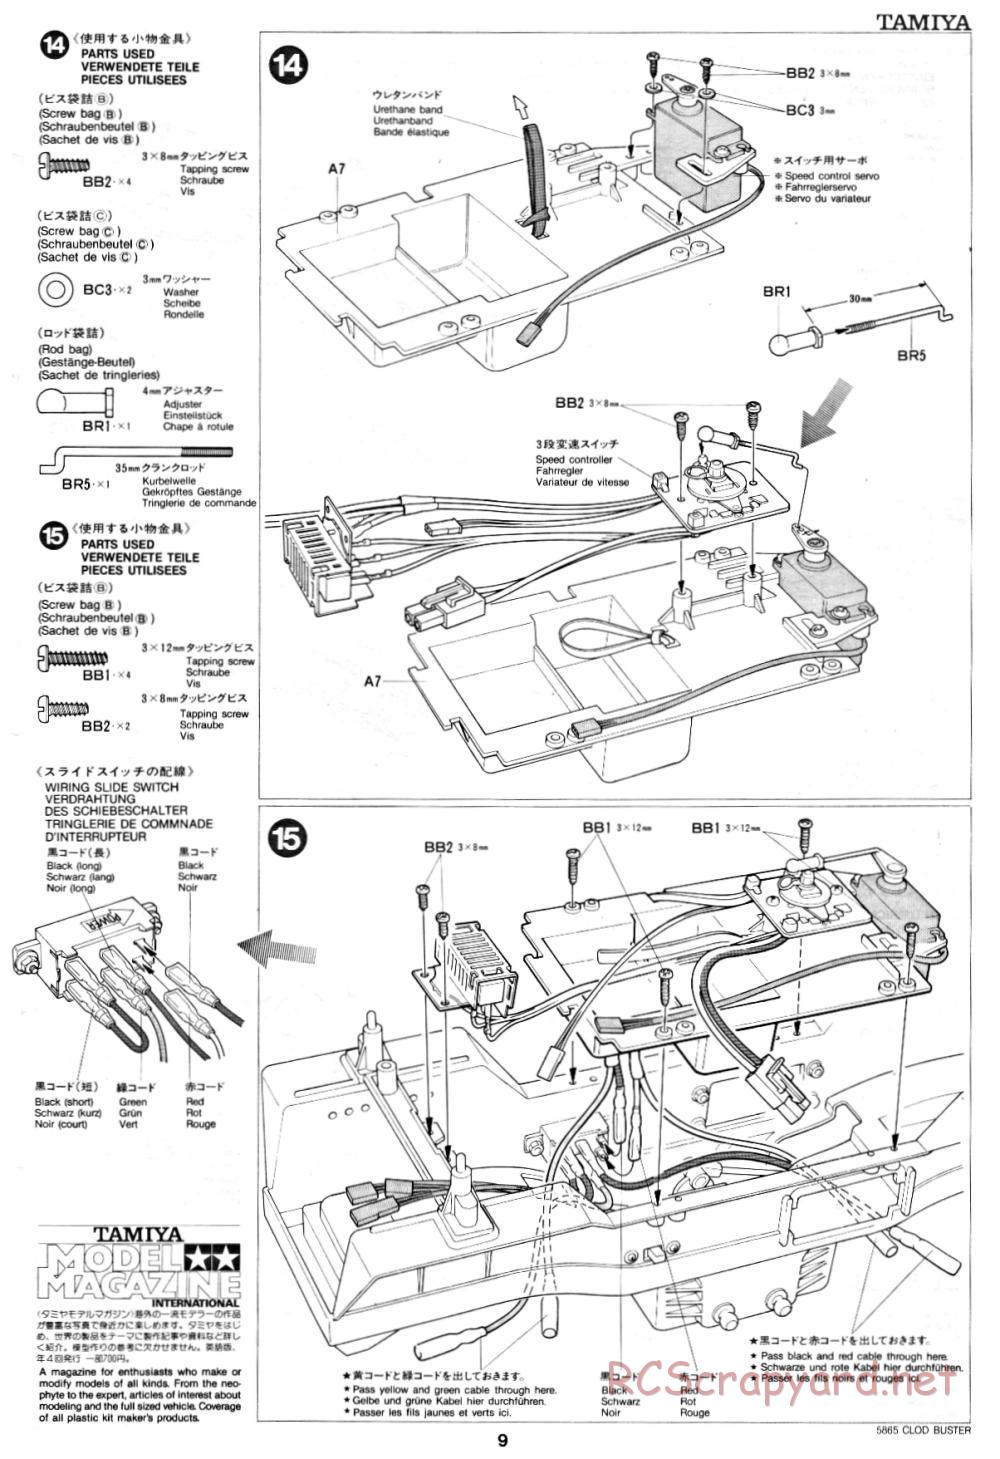 Tamiya - Clod Buster - 58065 - Manual - Page 9